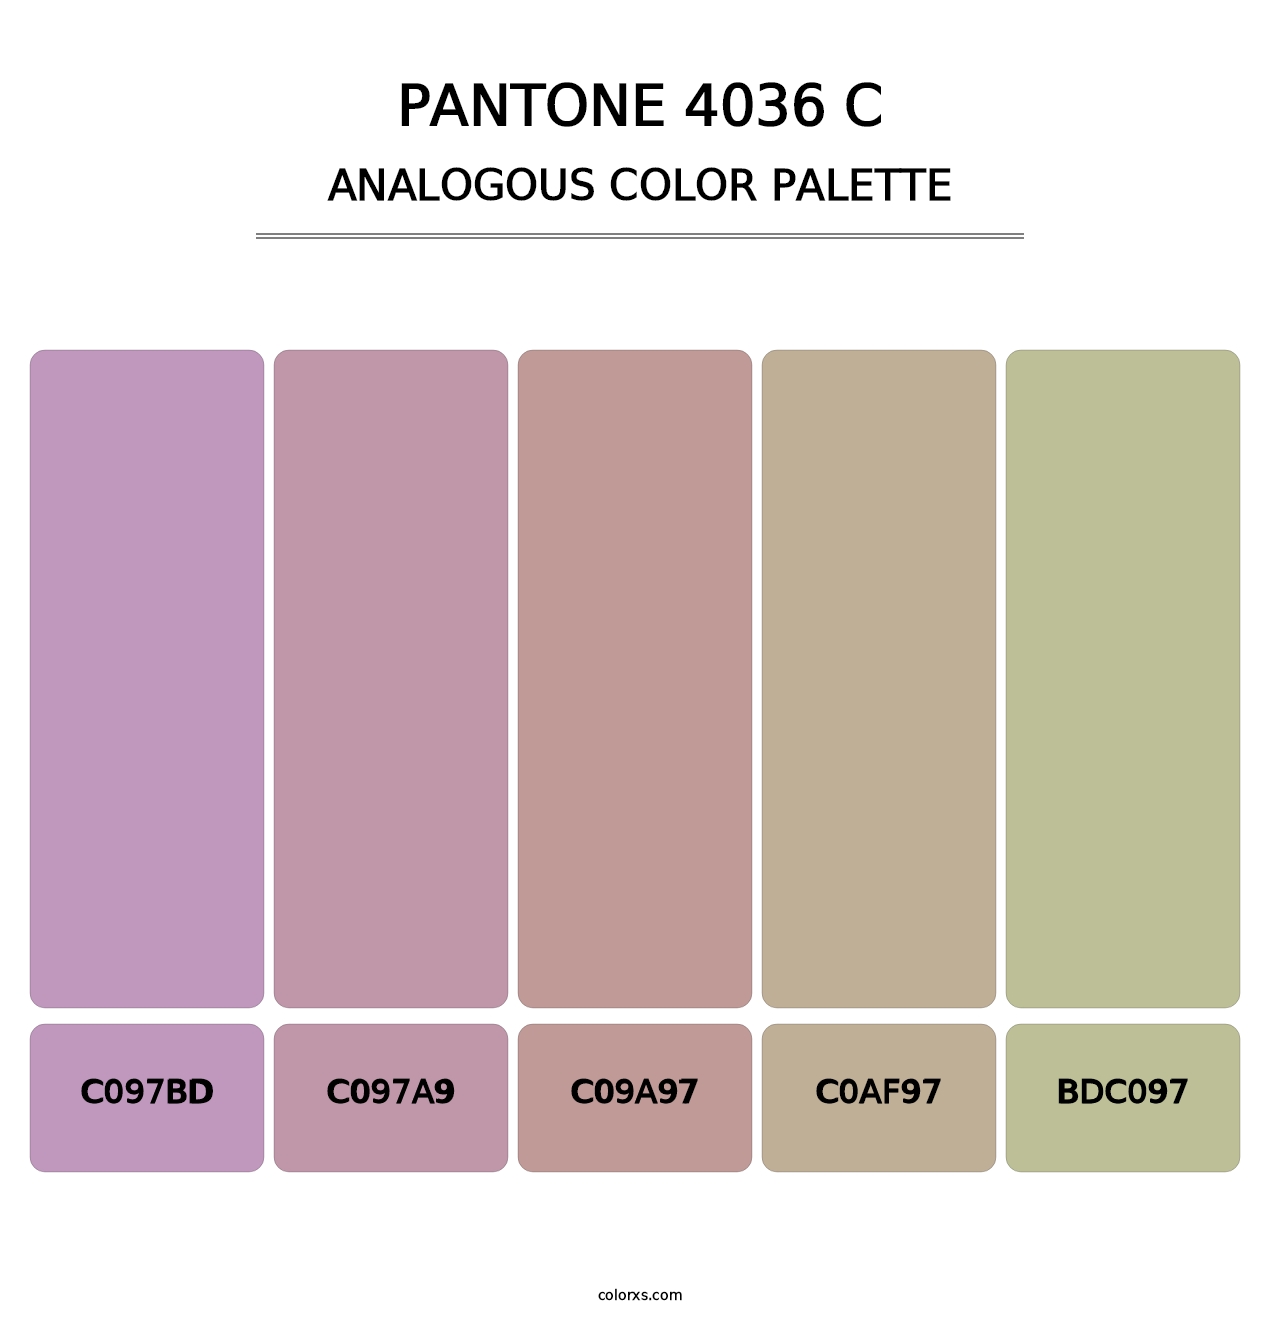 PANTONE 4036 C - Analogous Color Palette